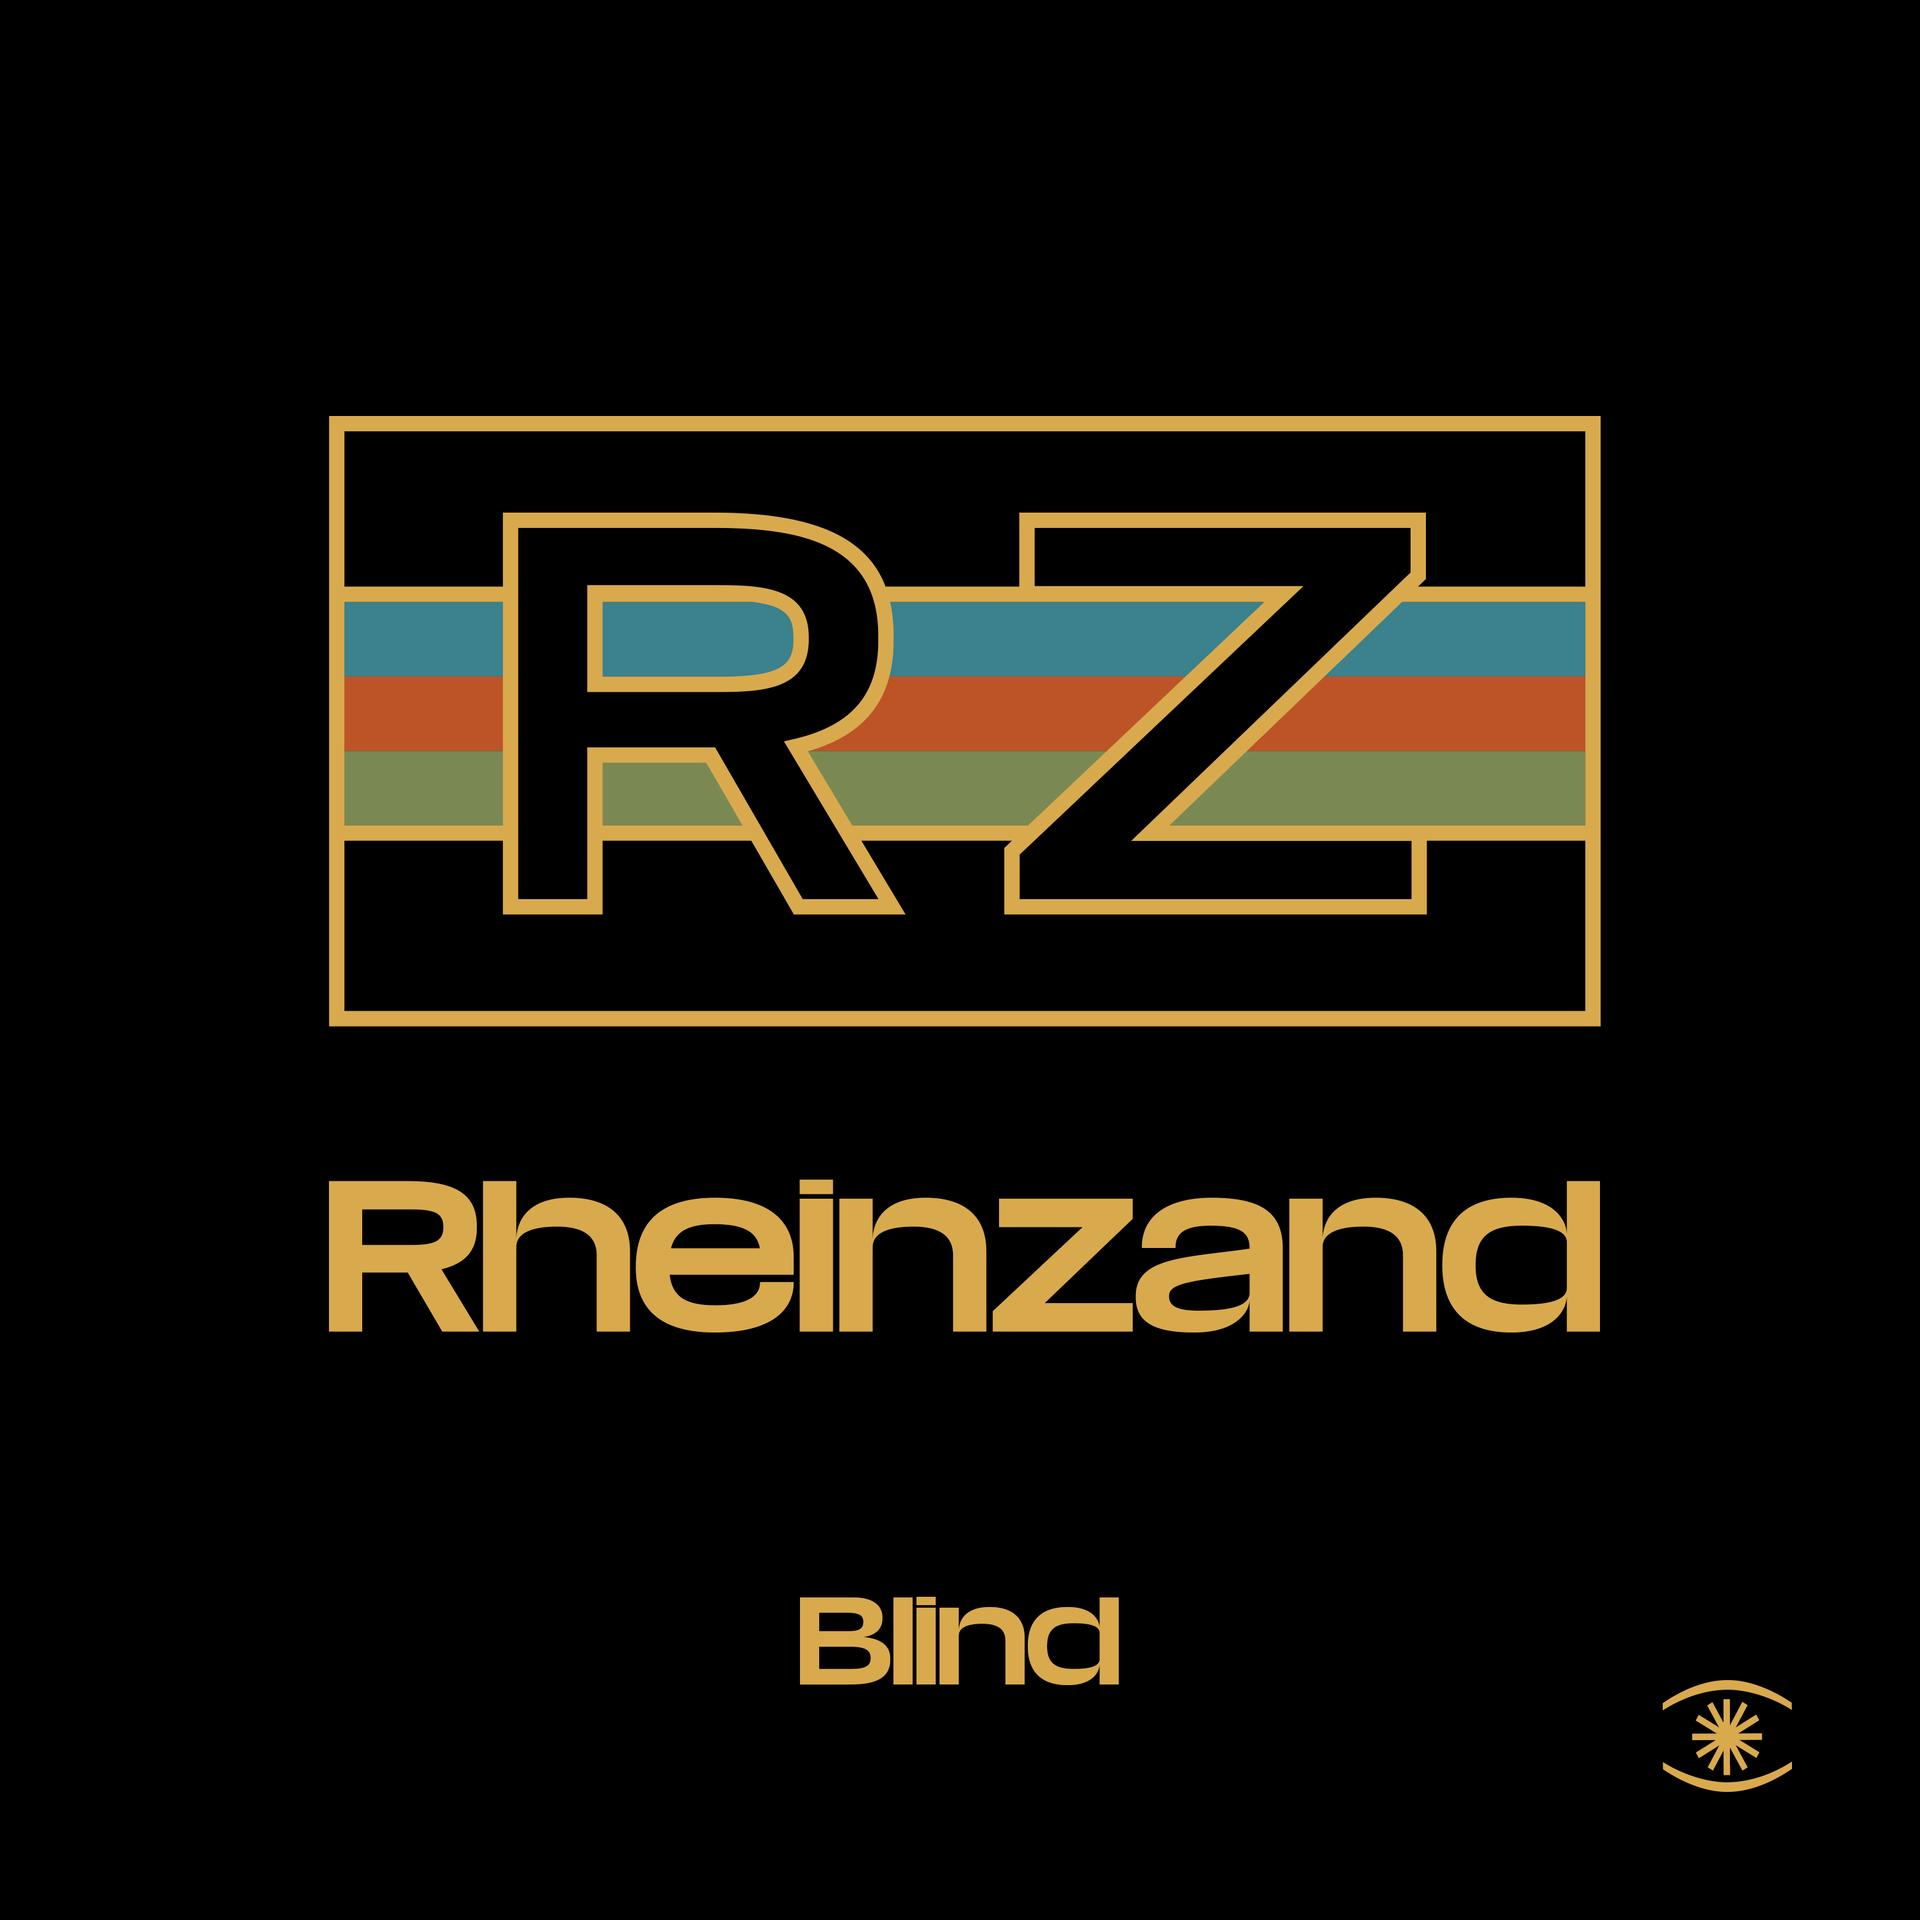 Rheinzand - Blind - (Vinyl)